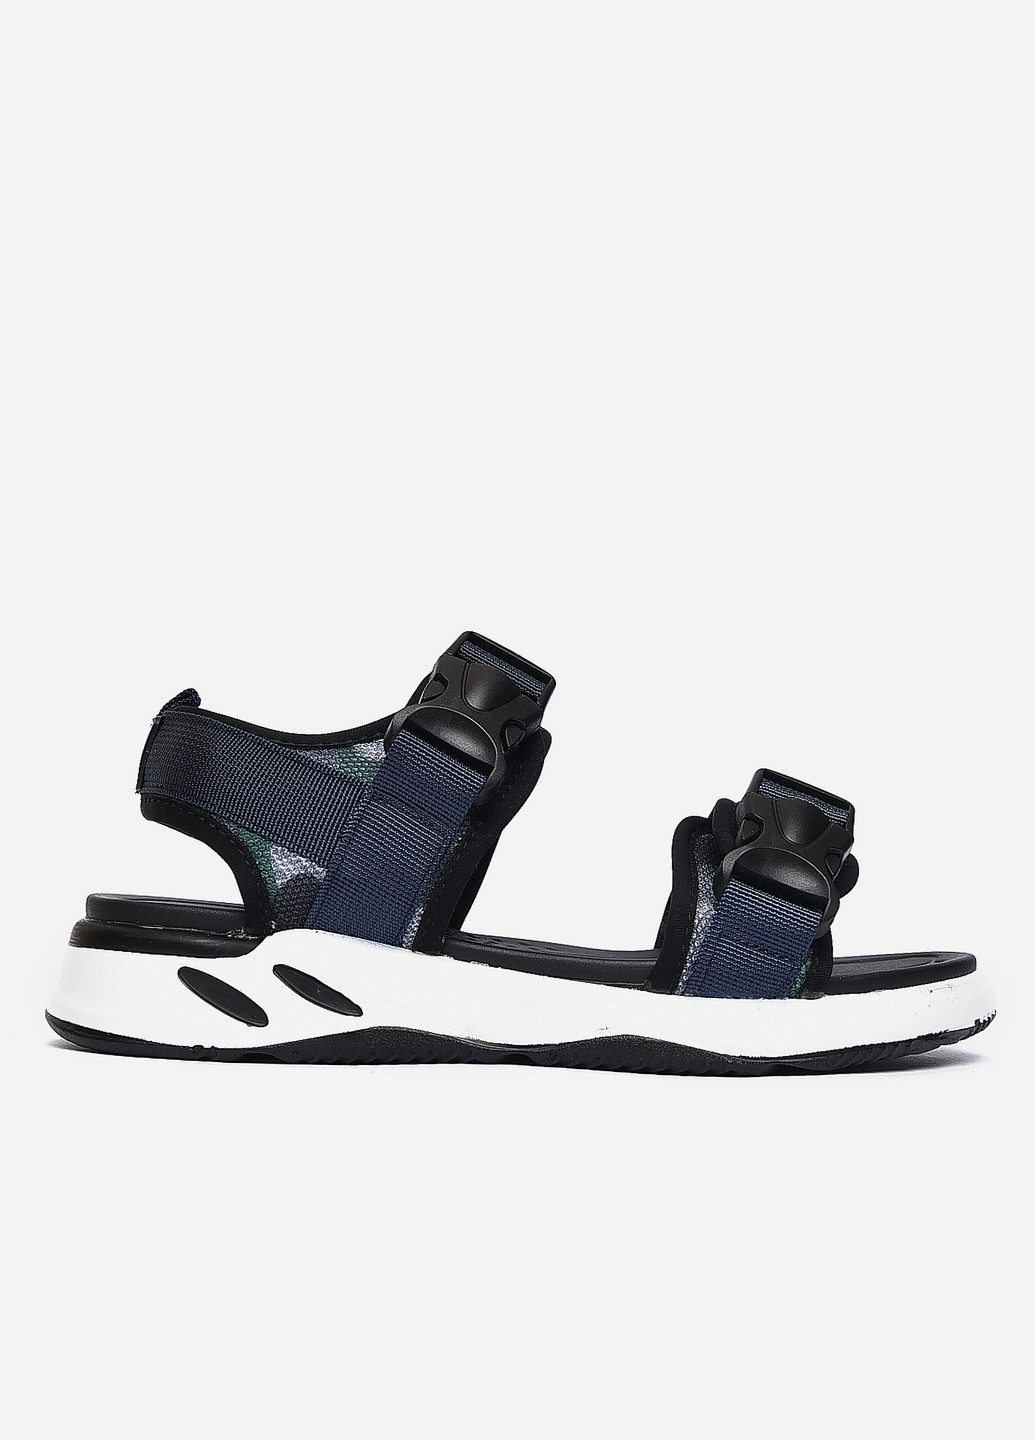 Пляжные сандалии мужские темно-синего цвета текстиль Let's Shop